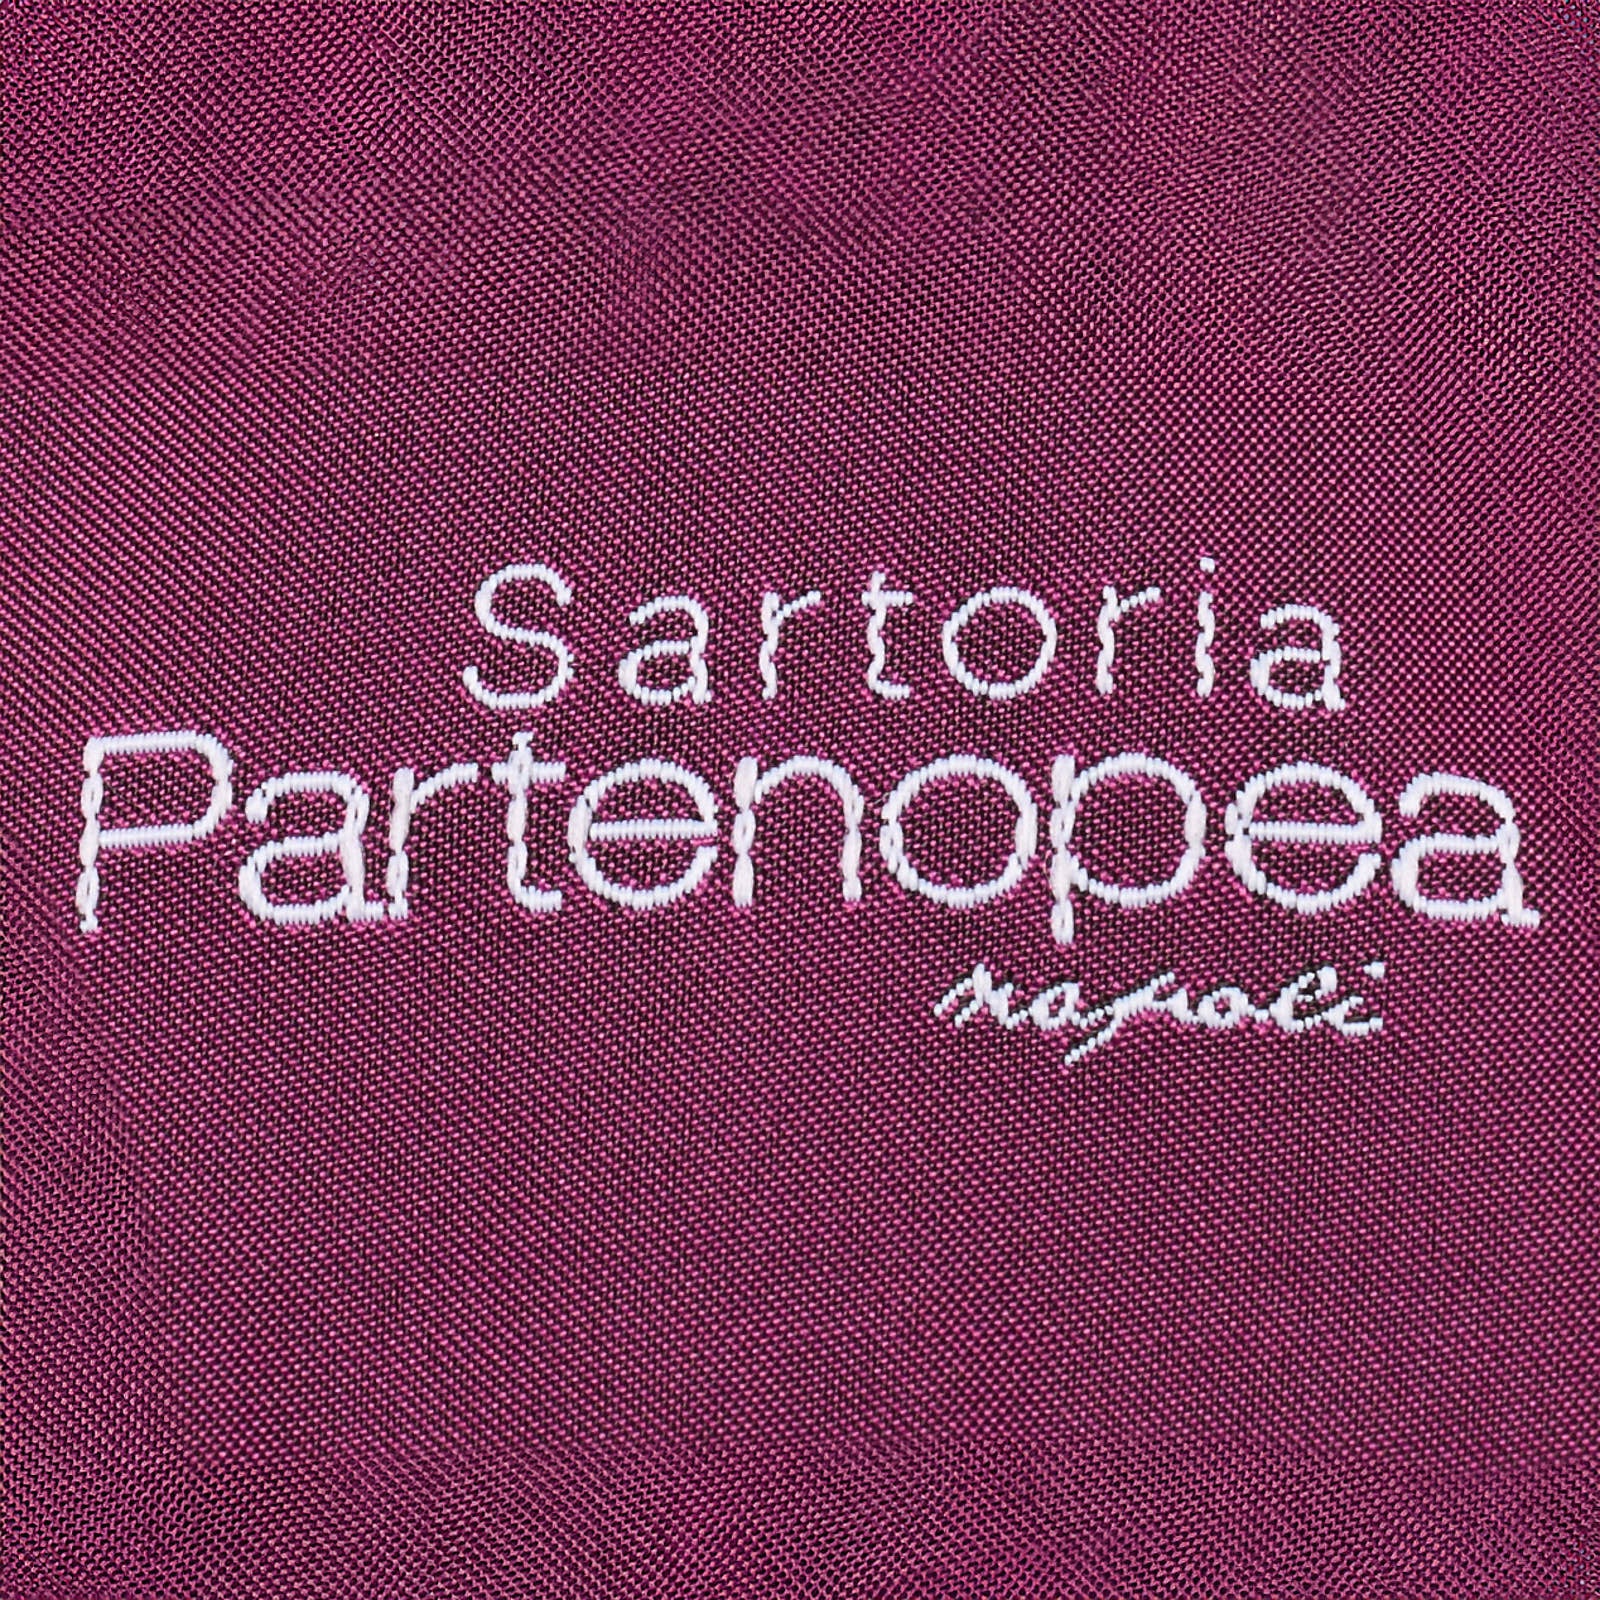 SARTORIA PARTENOPEA for Azzur Blue Loro Piana Jacket EU 54 NEW US 44